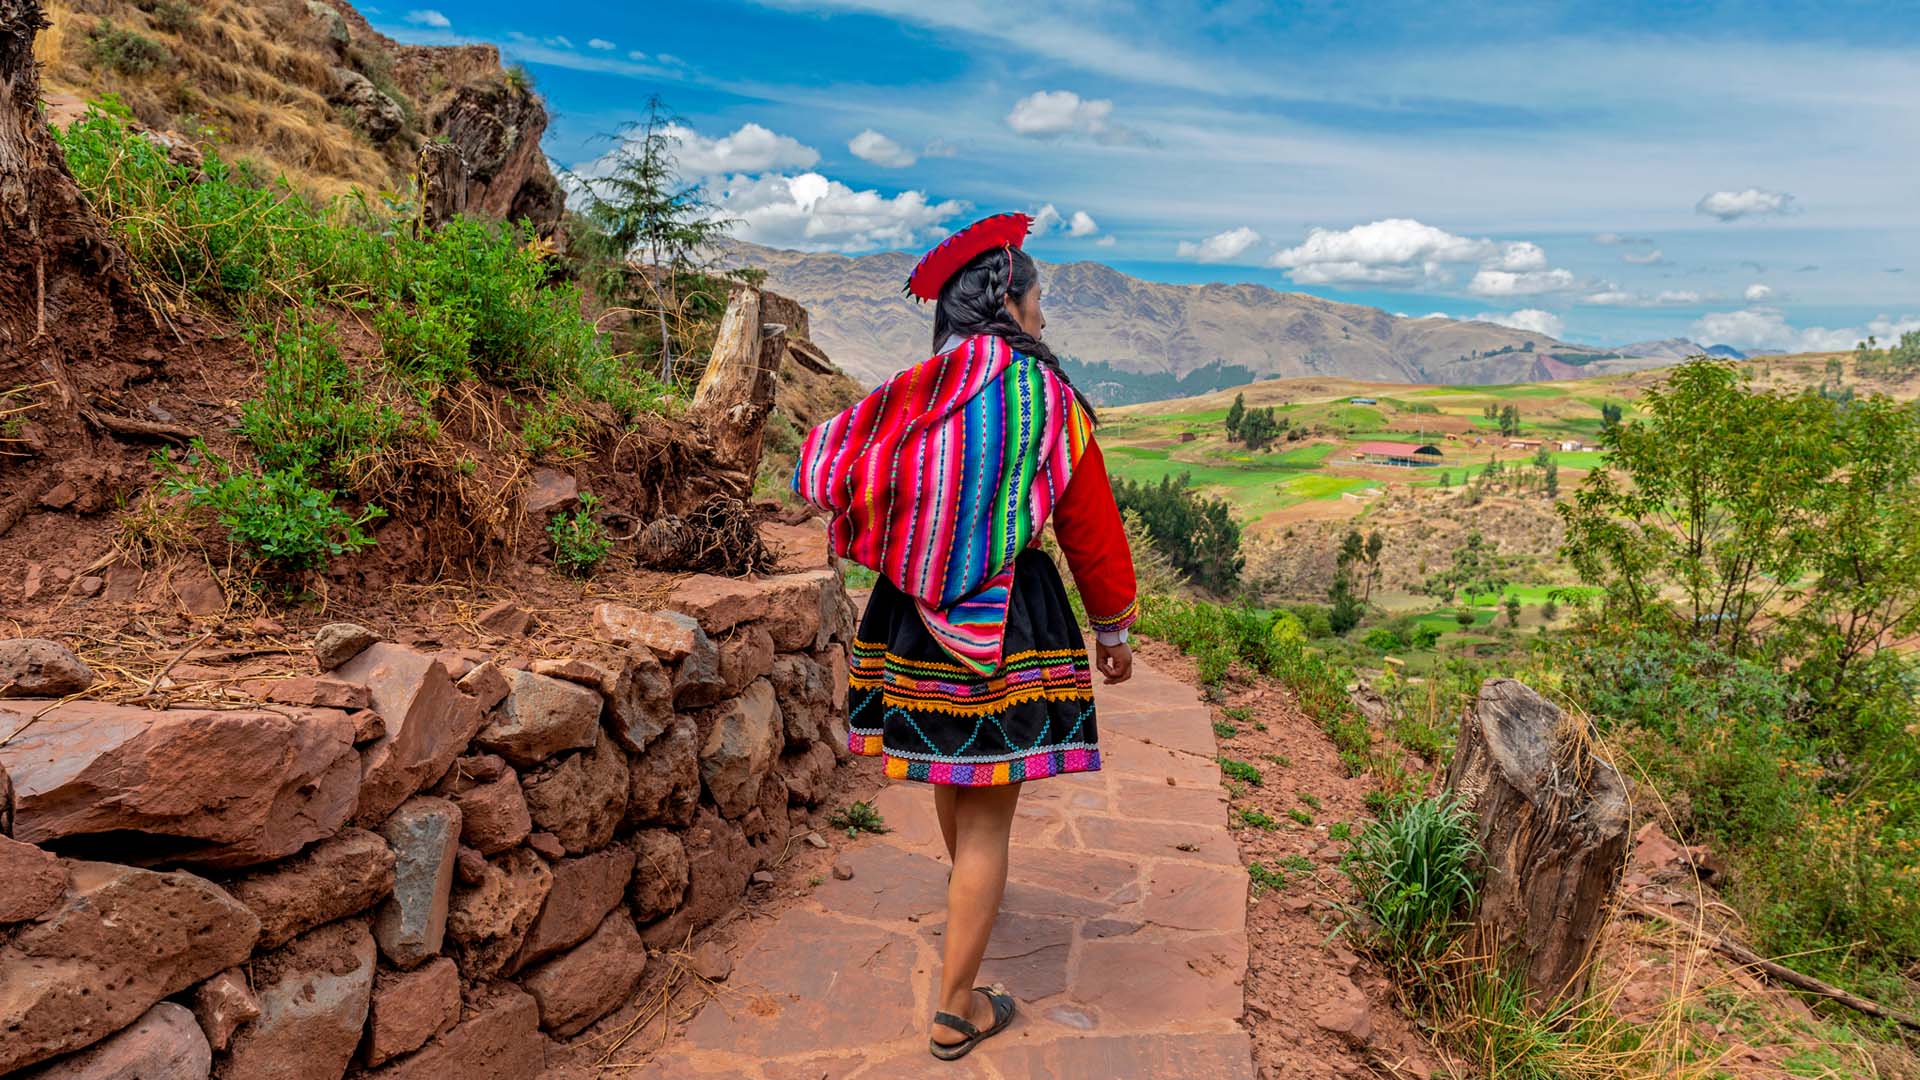 Descubre El Origen Del Quechua El Idioma De Los Incas